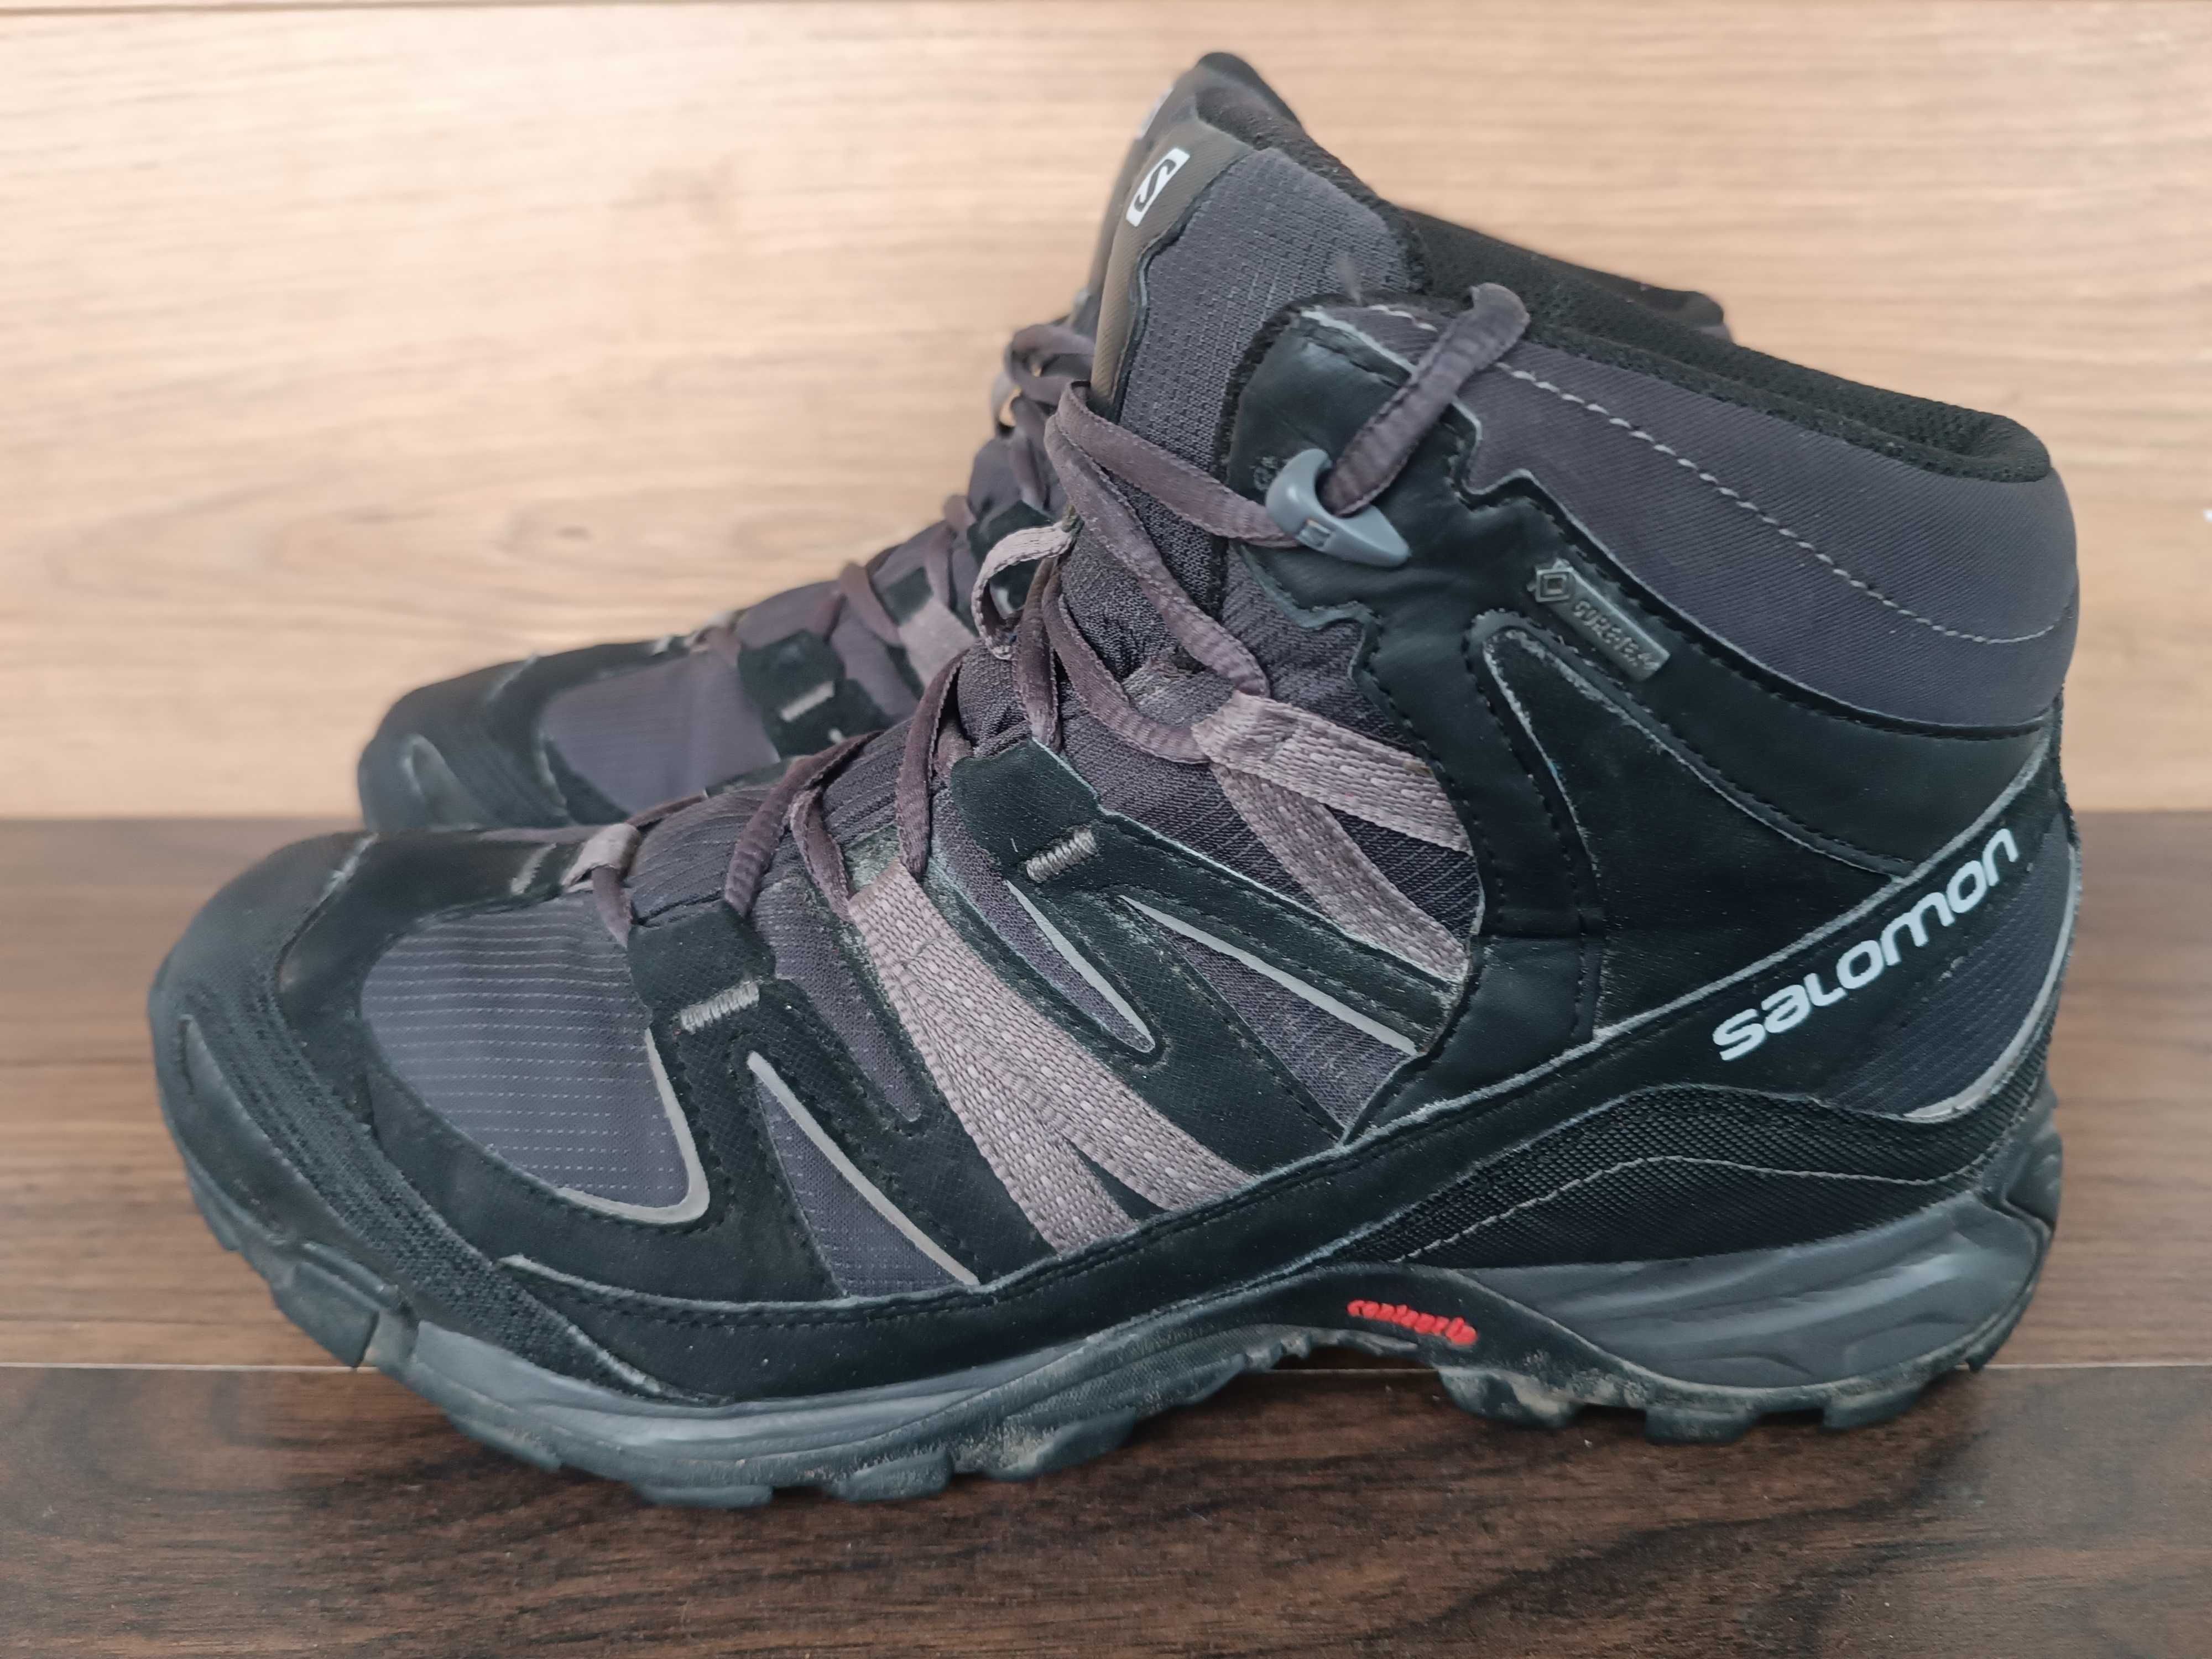 Ботинки Salomon XA Pro goreTex 42.5 размер 27 см